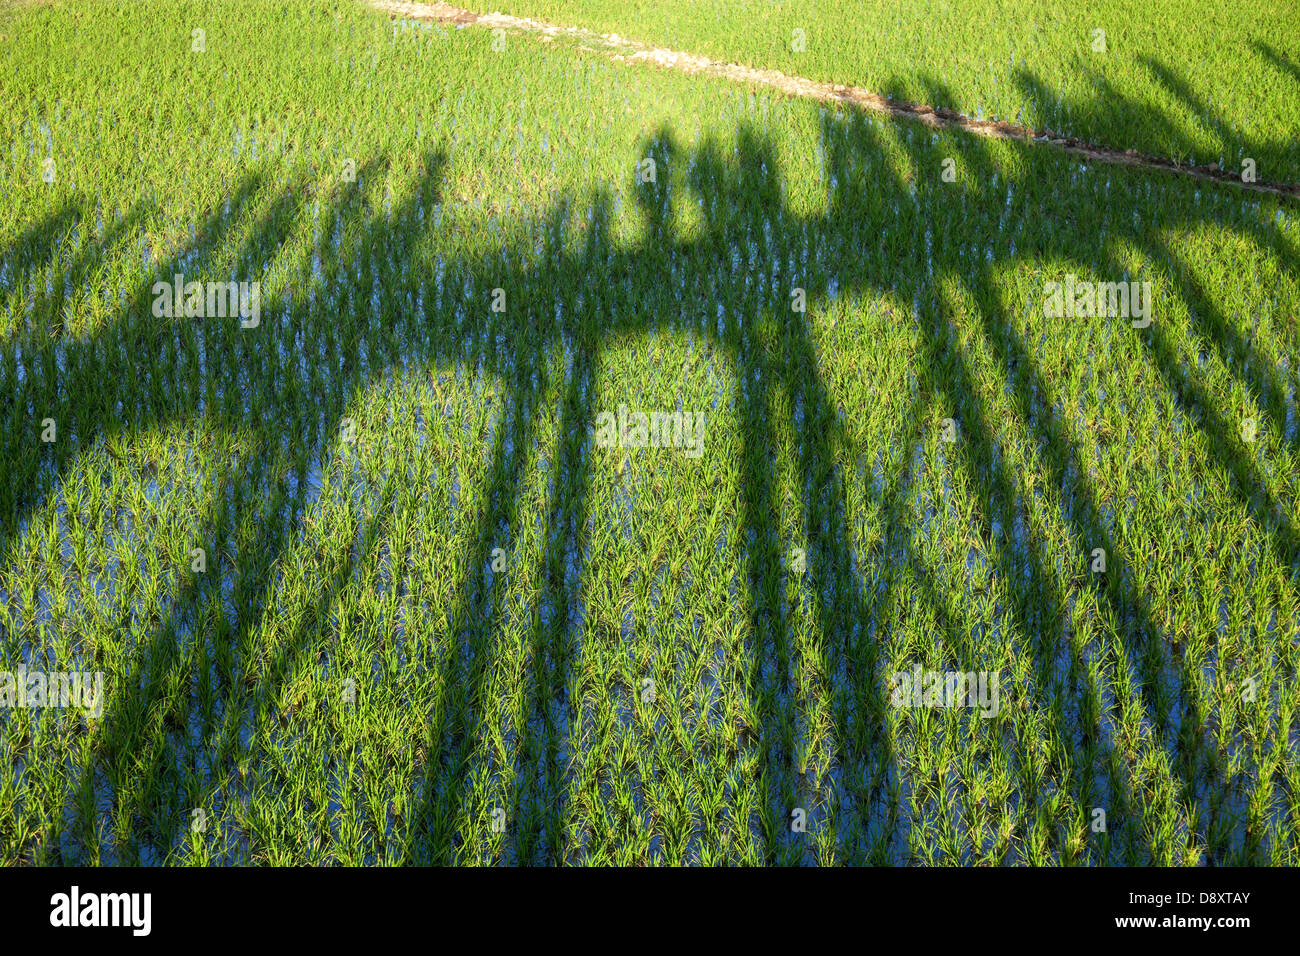 Shadow of the U Bein Teak Bridge across Taungthaman Lake, Myanmar 4 Stock Photo